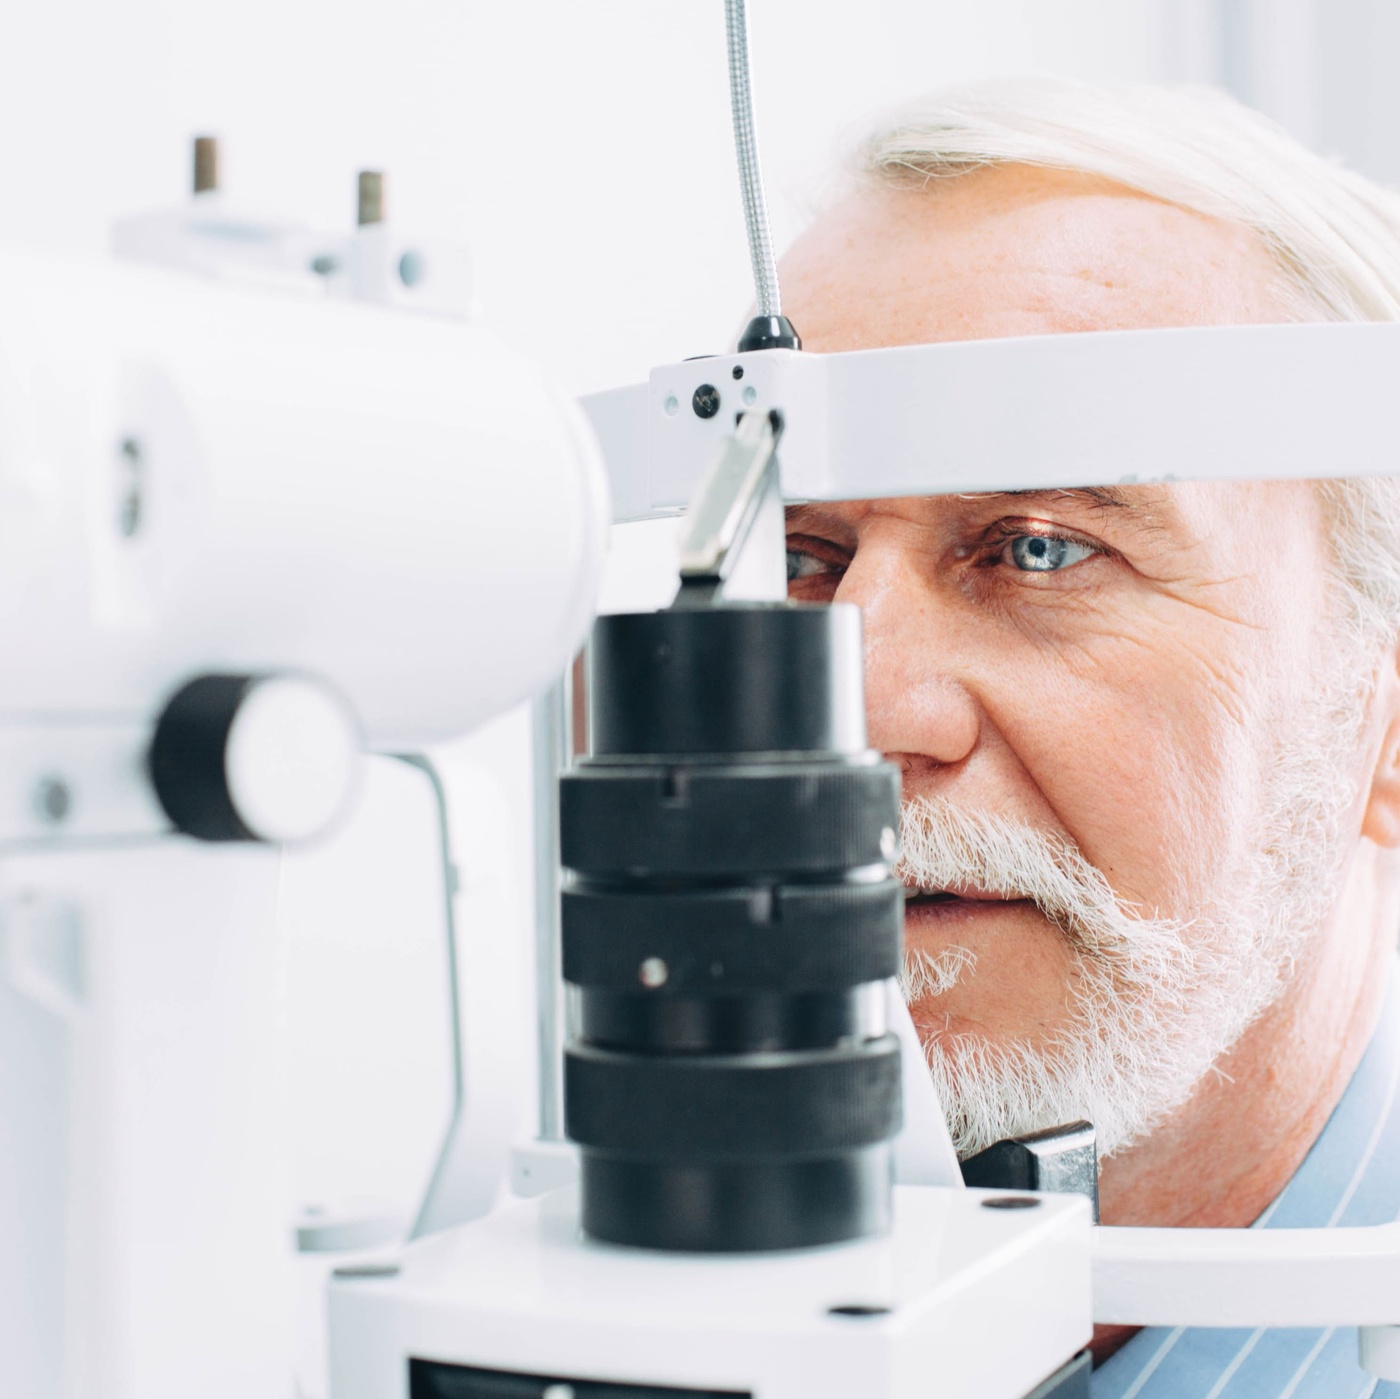 Augenuntersuchung mit Spaltlampenmikroskop bei einem Mann